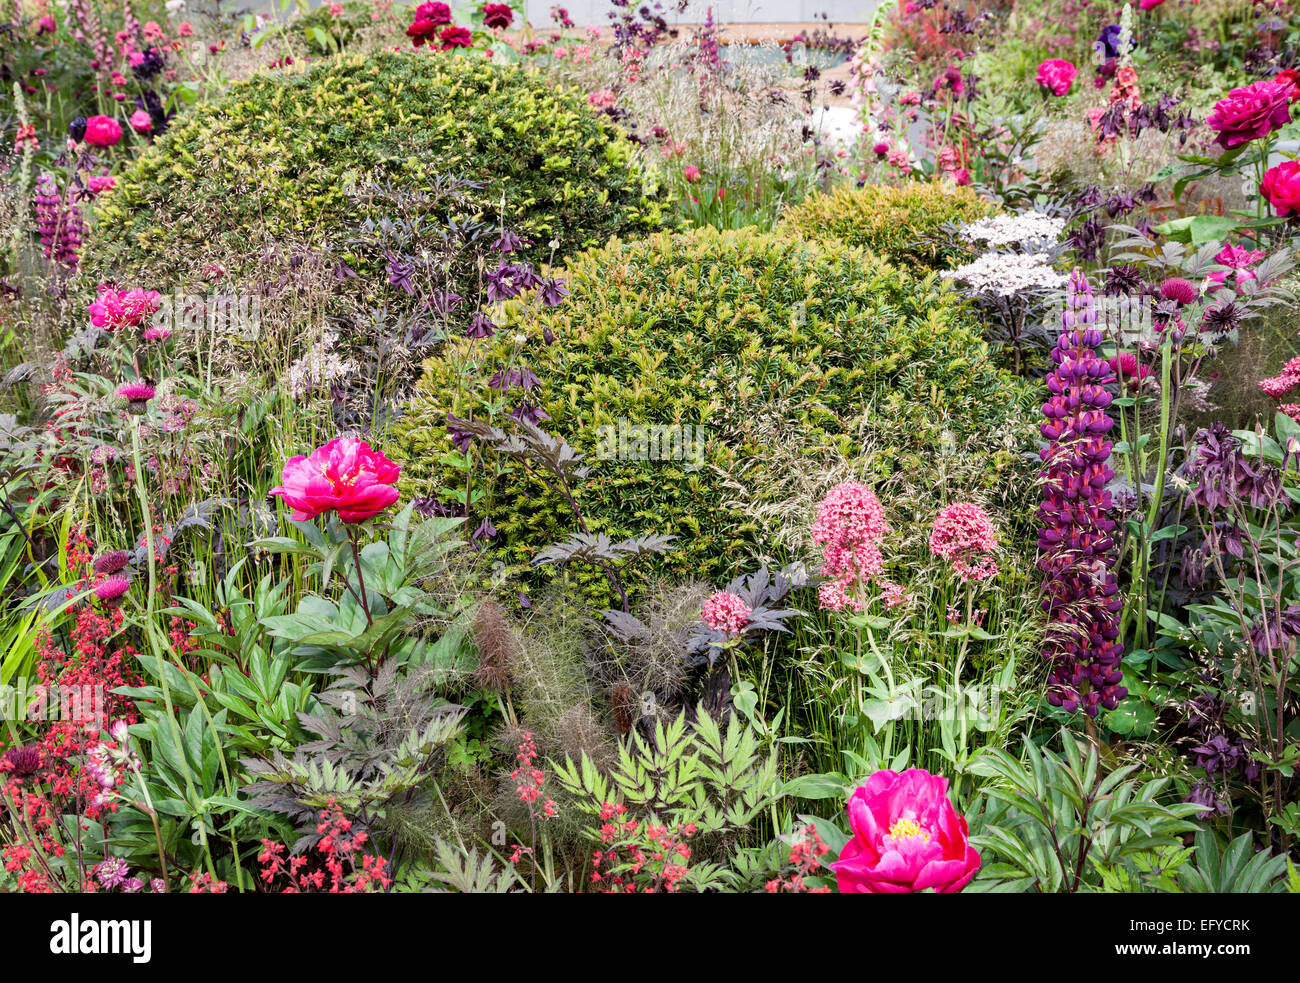 Pelota en forma de tejos rodeado por rosa y púrpura florecientes arbustos y plantas perennes Foto de stock